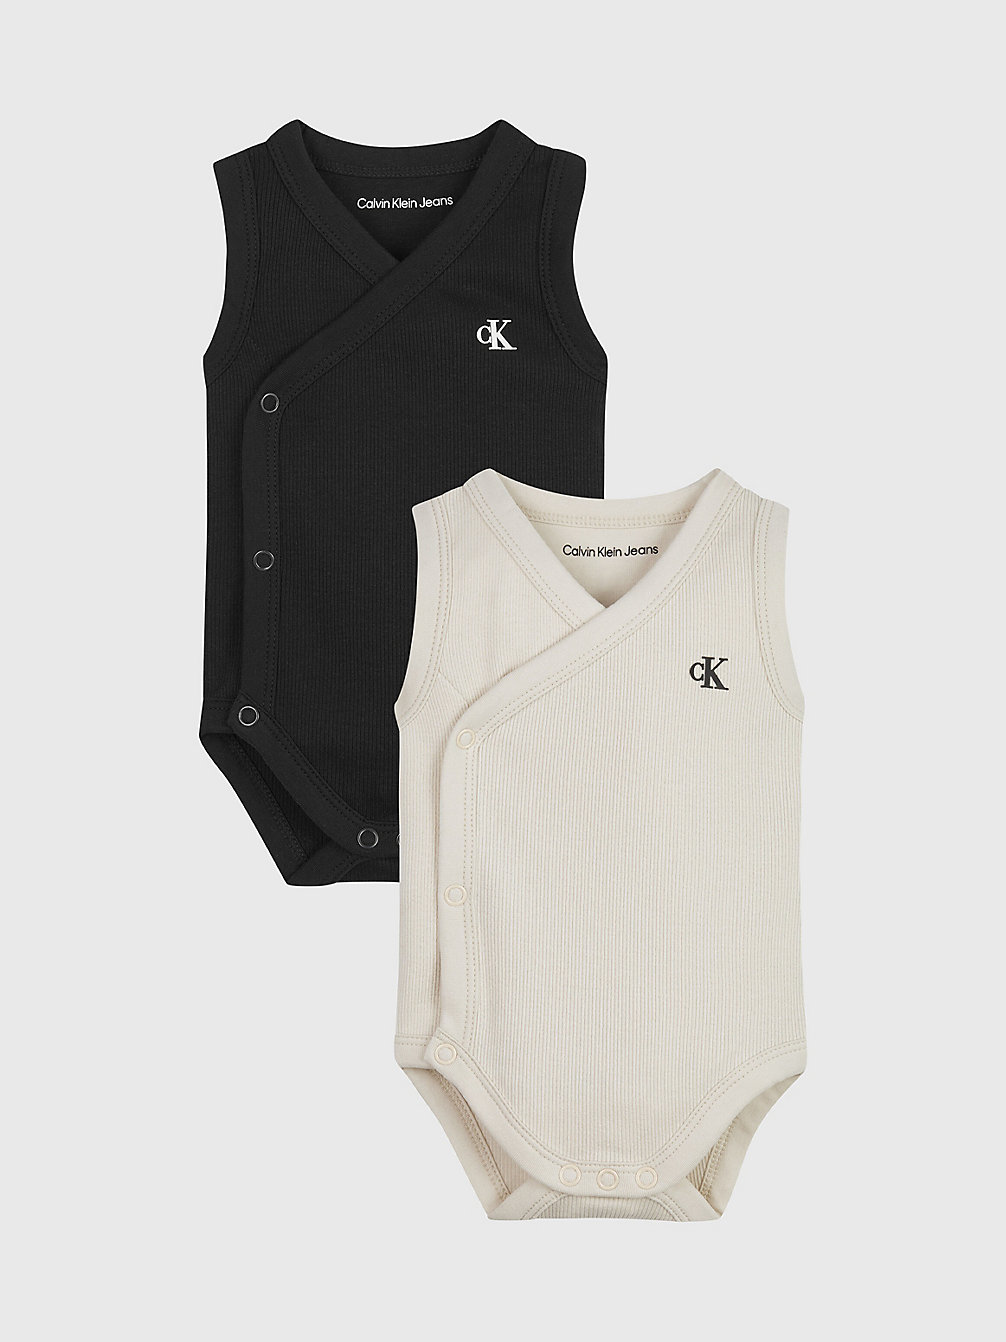 WHITE CAP GRAY / BLACK > 2-Pack Mouwloze Newborn Bodysuits > undefined newborn - Calvin Klein